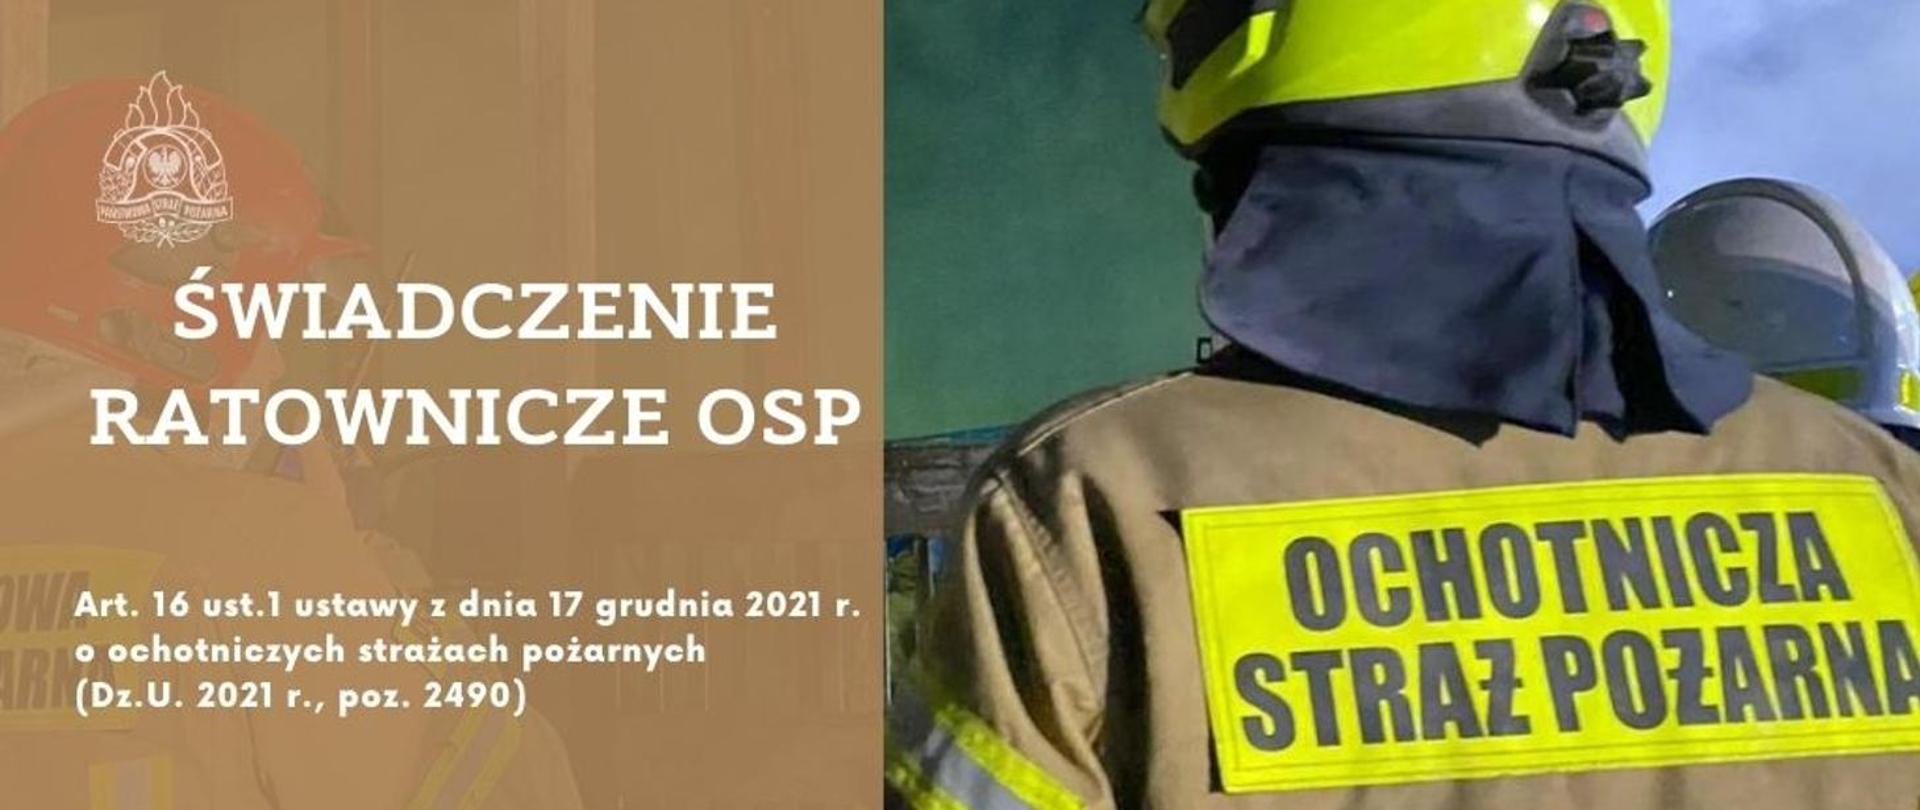 Świadczenie ratownicze OSP